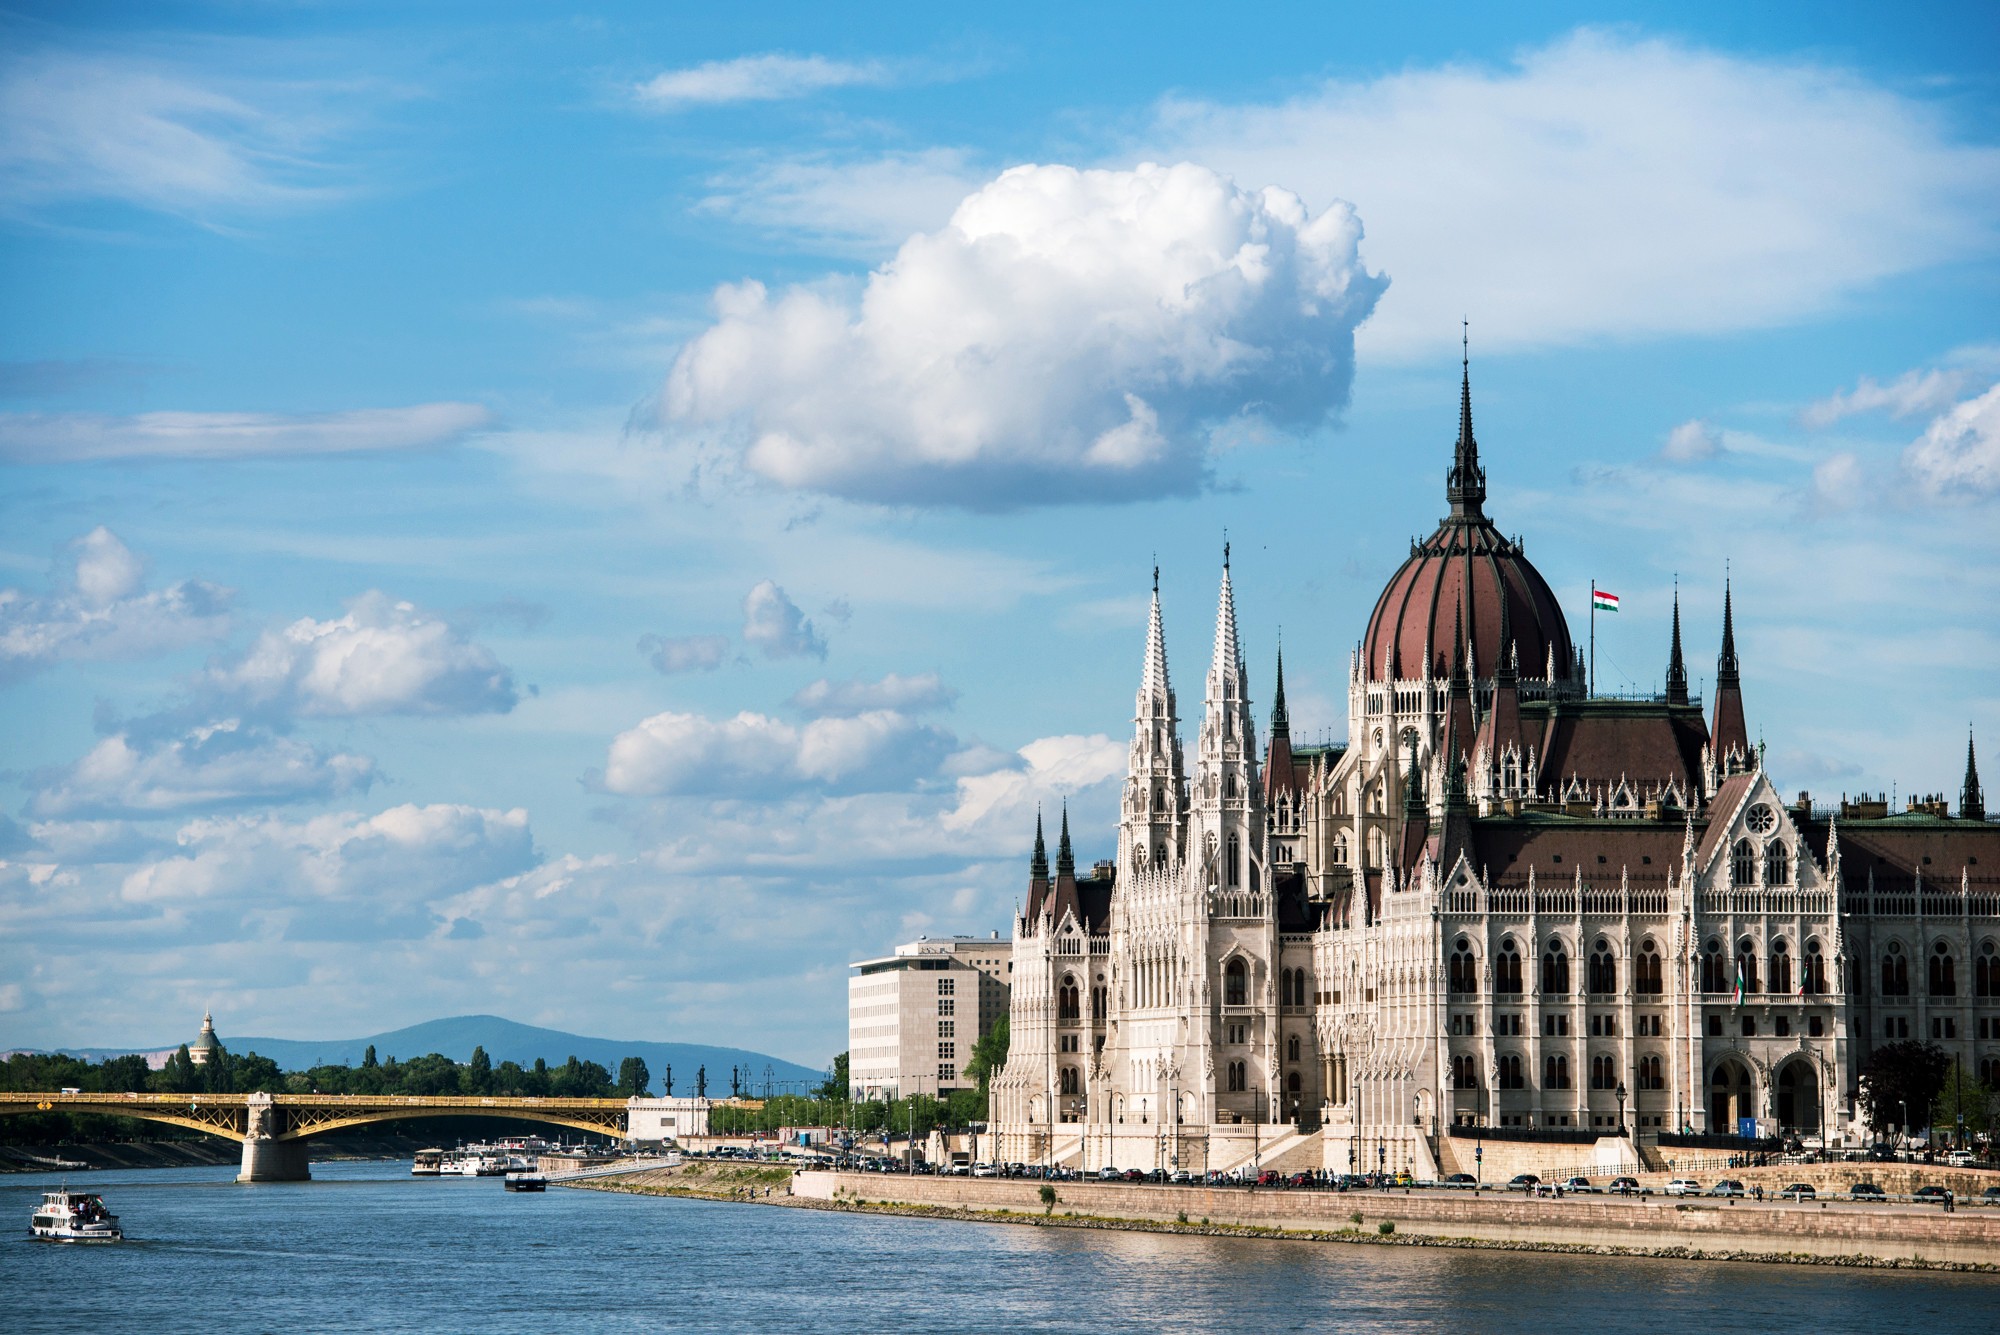 Вид на венгерский Парламент на берегу Дуная — главный символ Будапешта.